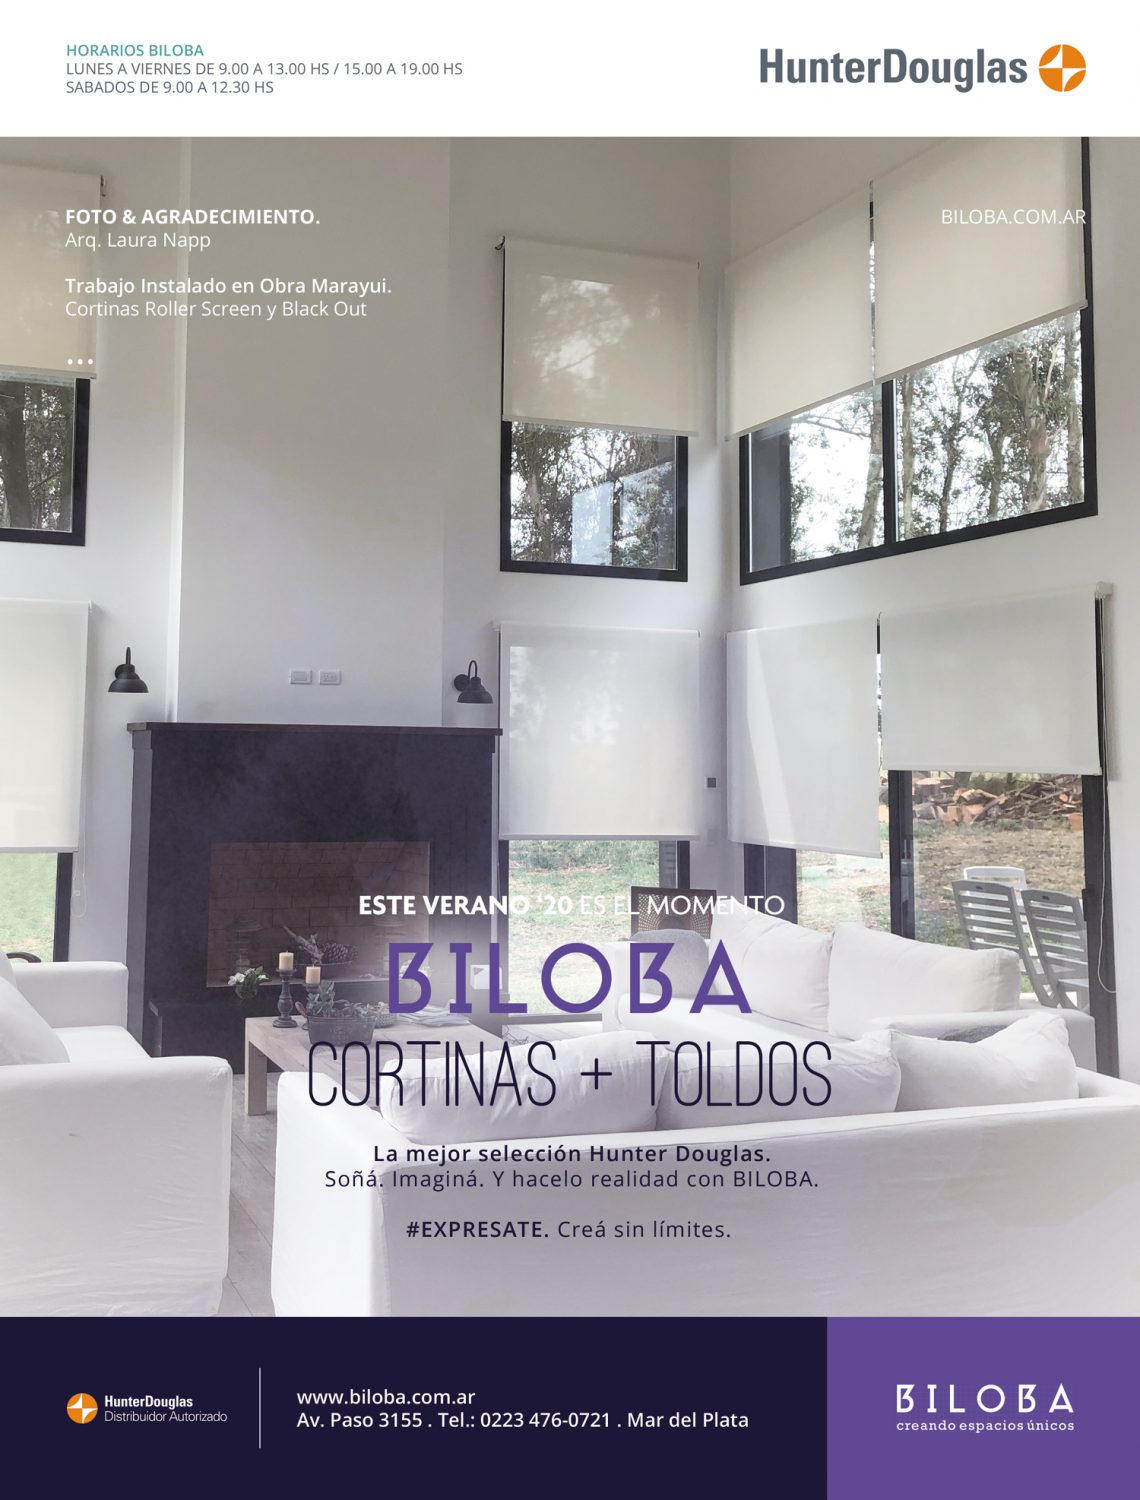 Diseño gráfico y producción publicitaria medio gráficos para BILOBA by UMM ideas SA